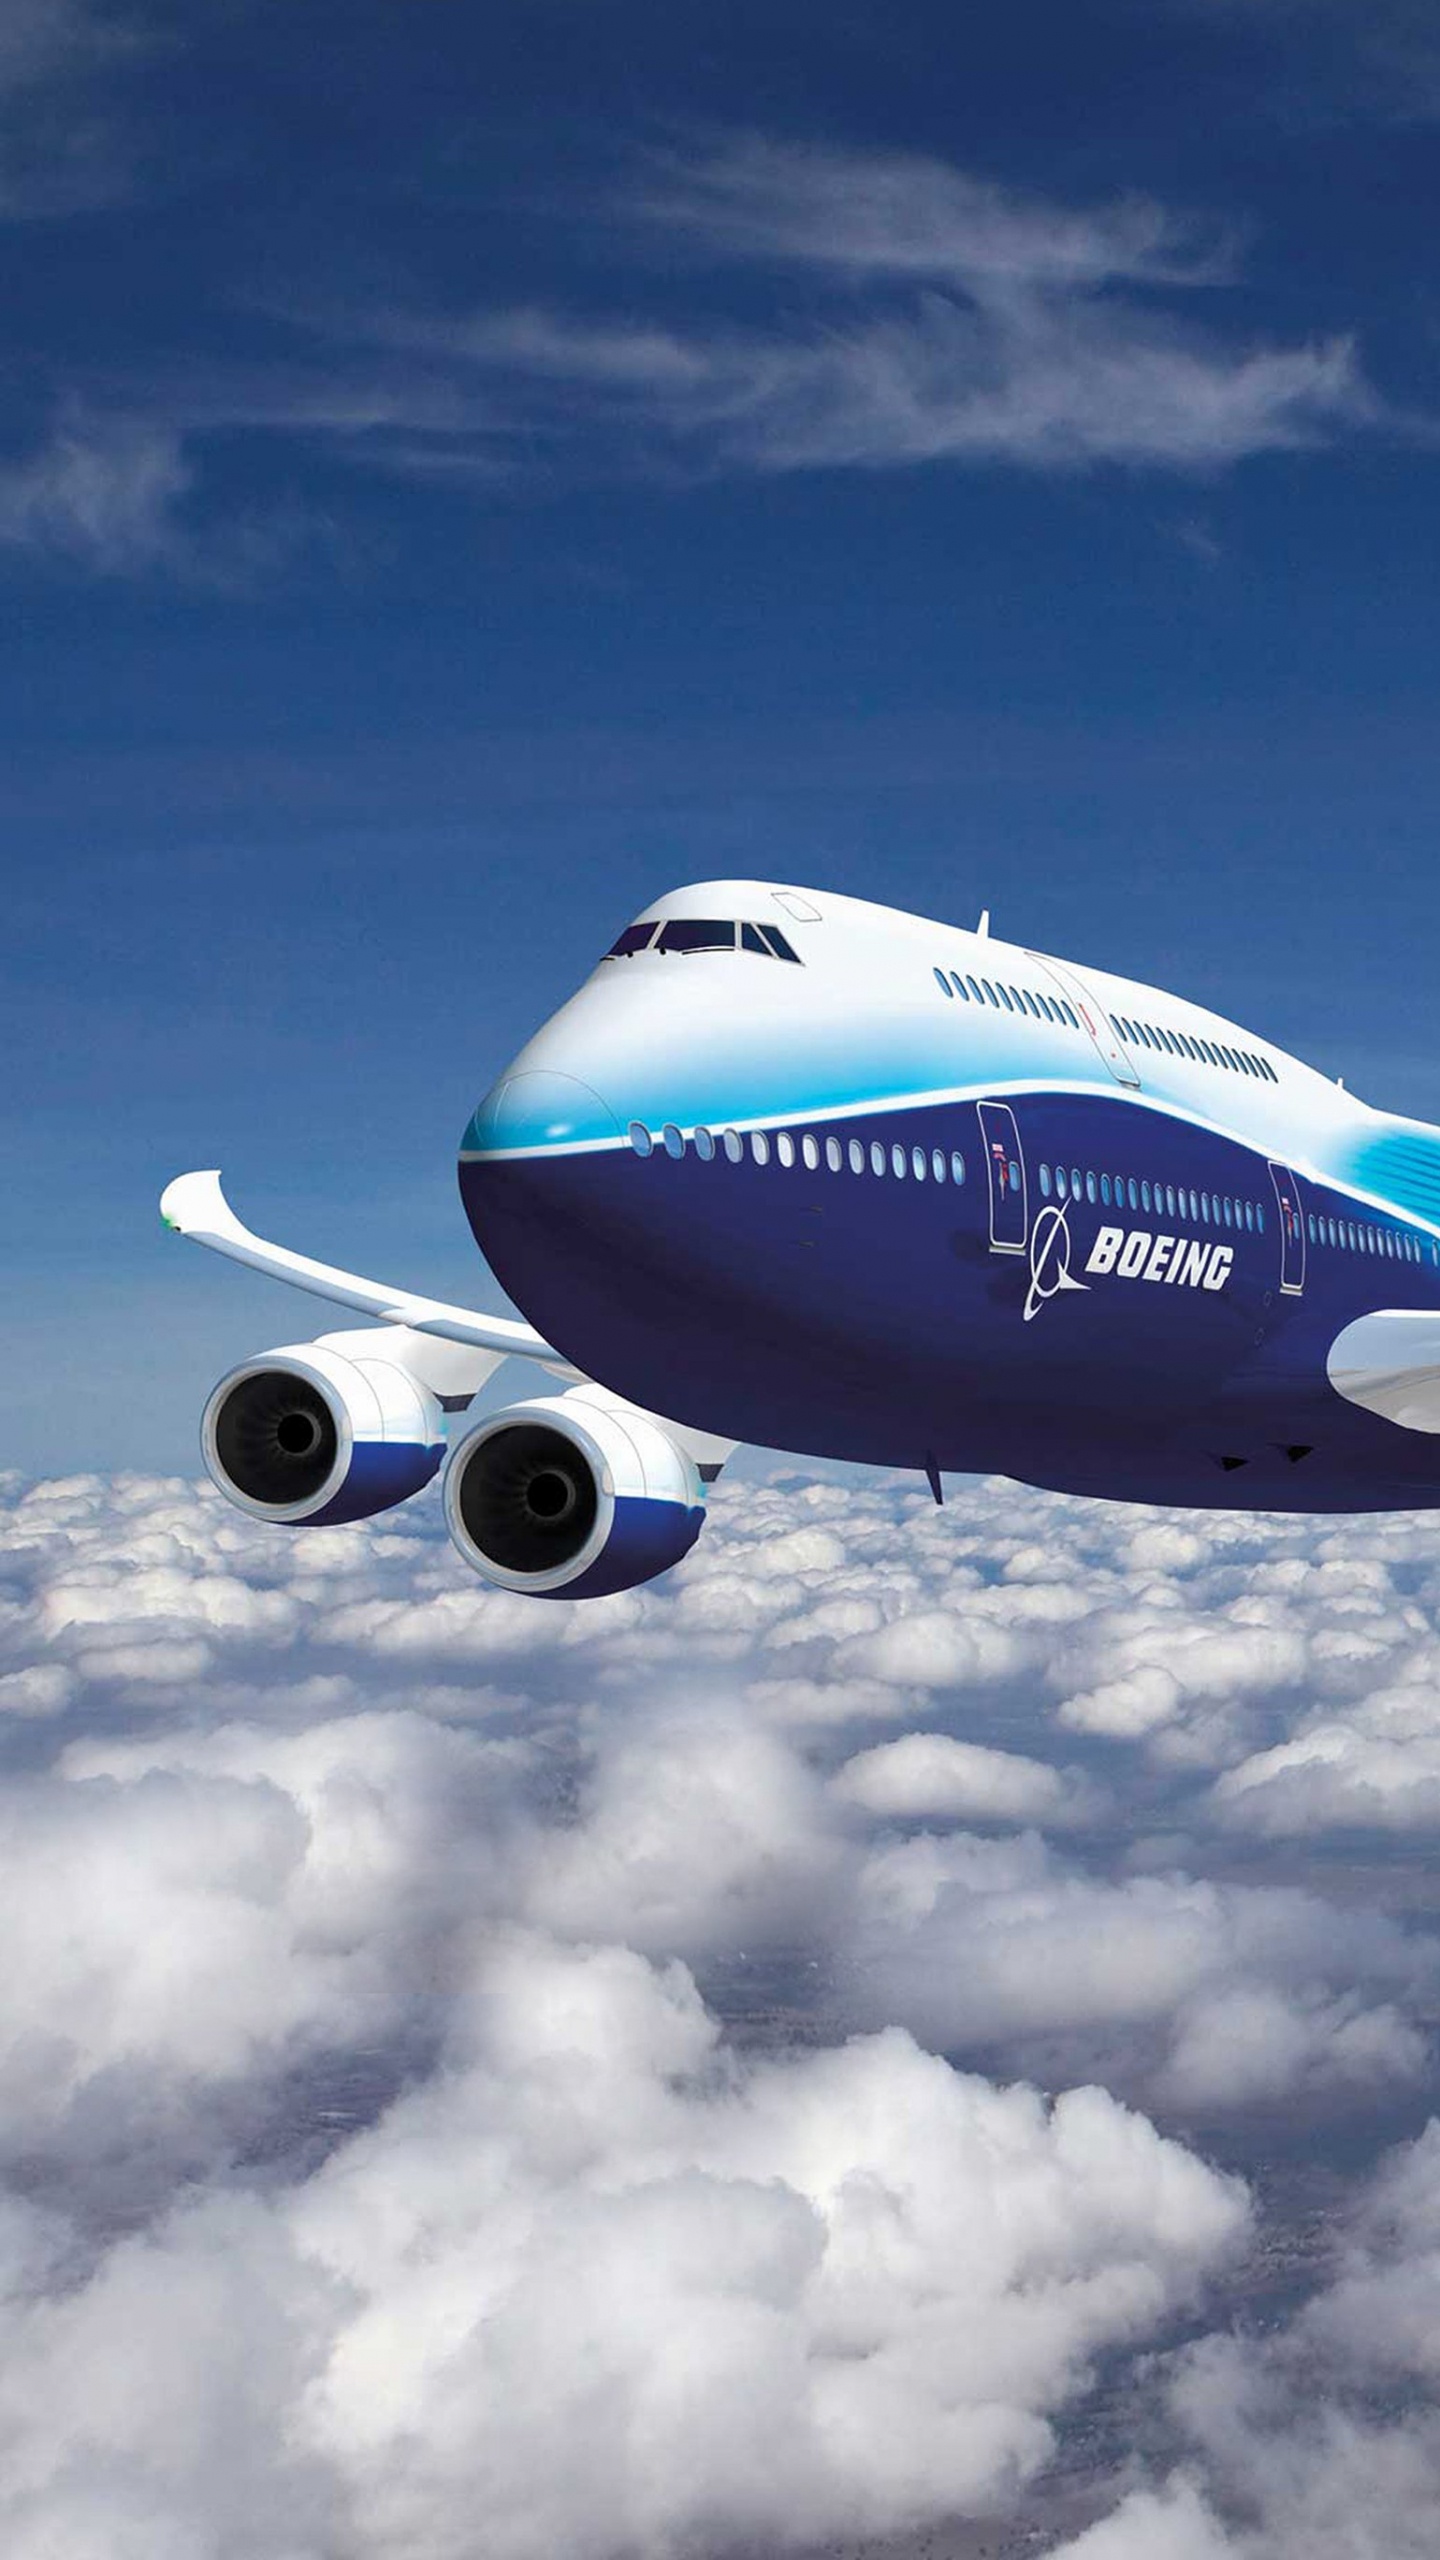 Weißes Und Blaues Flugzeug, Das Tagsüber Unter Blauem Himmel Fliegt. Wallpaper in 1440x2560 Resolution